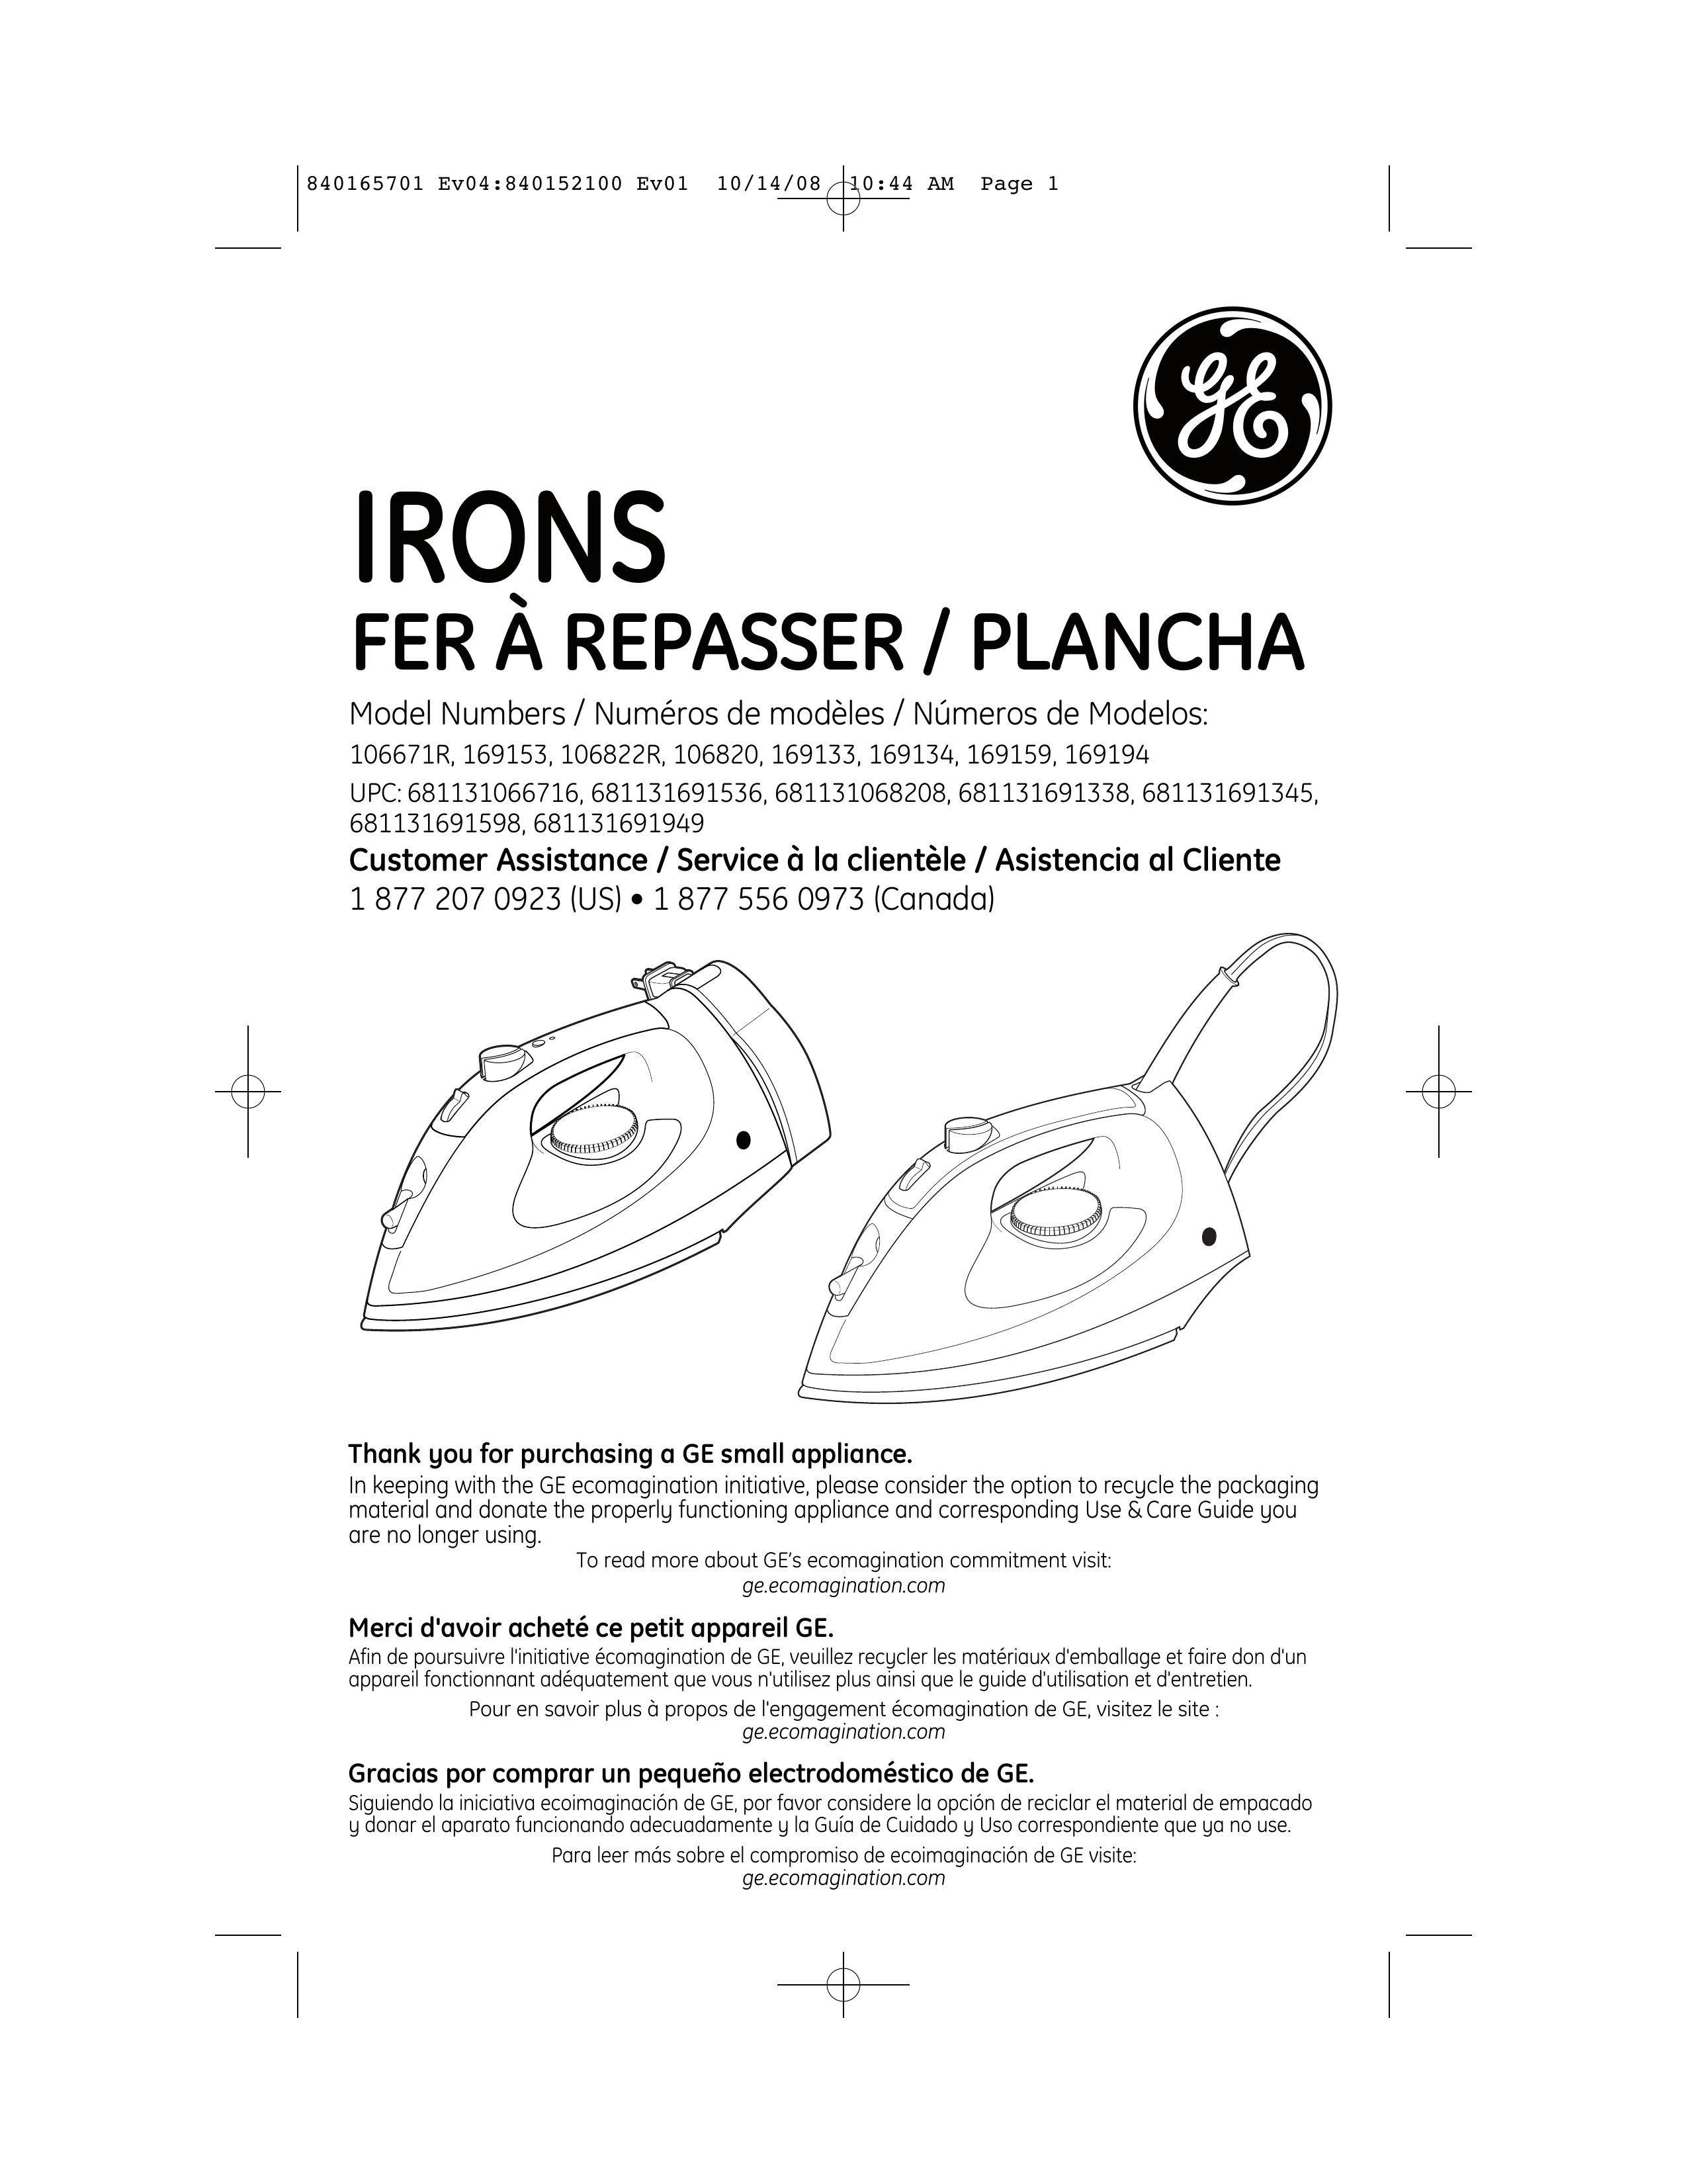 GE 681131691345 Iron User Manual